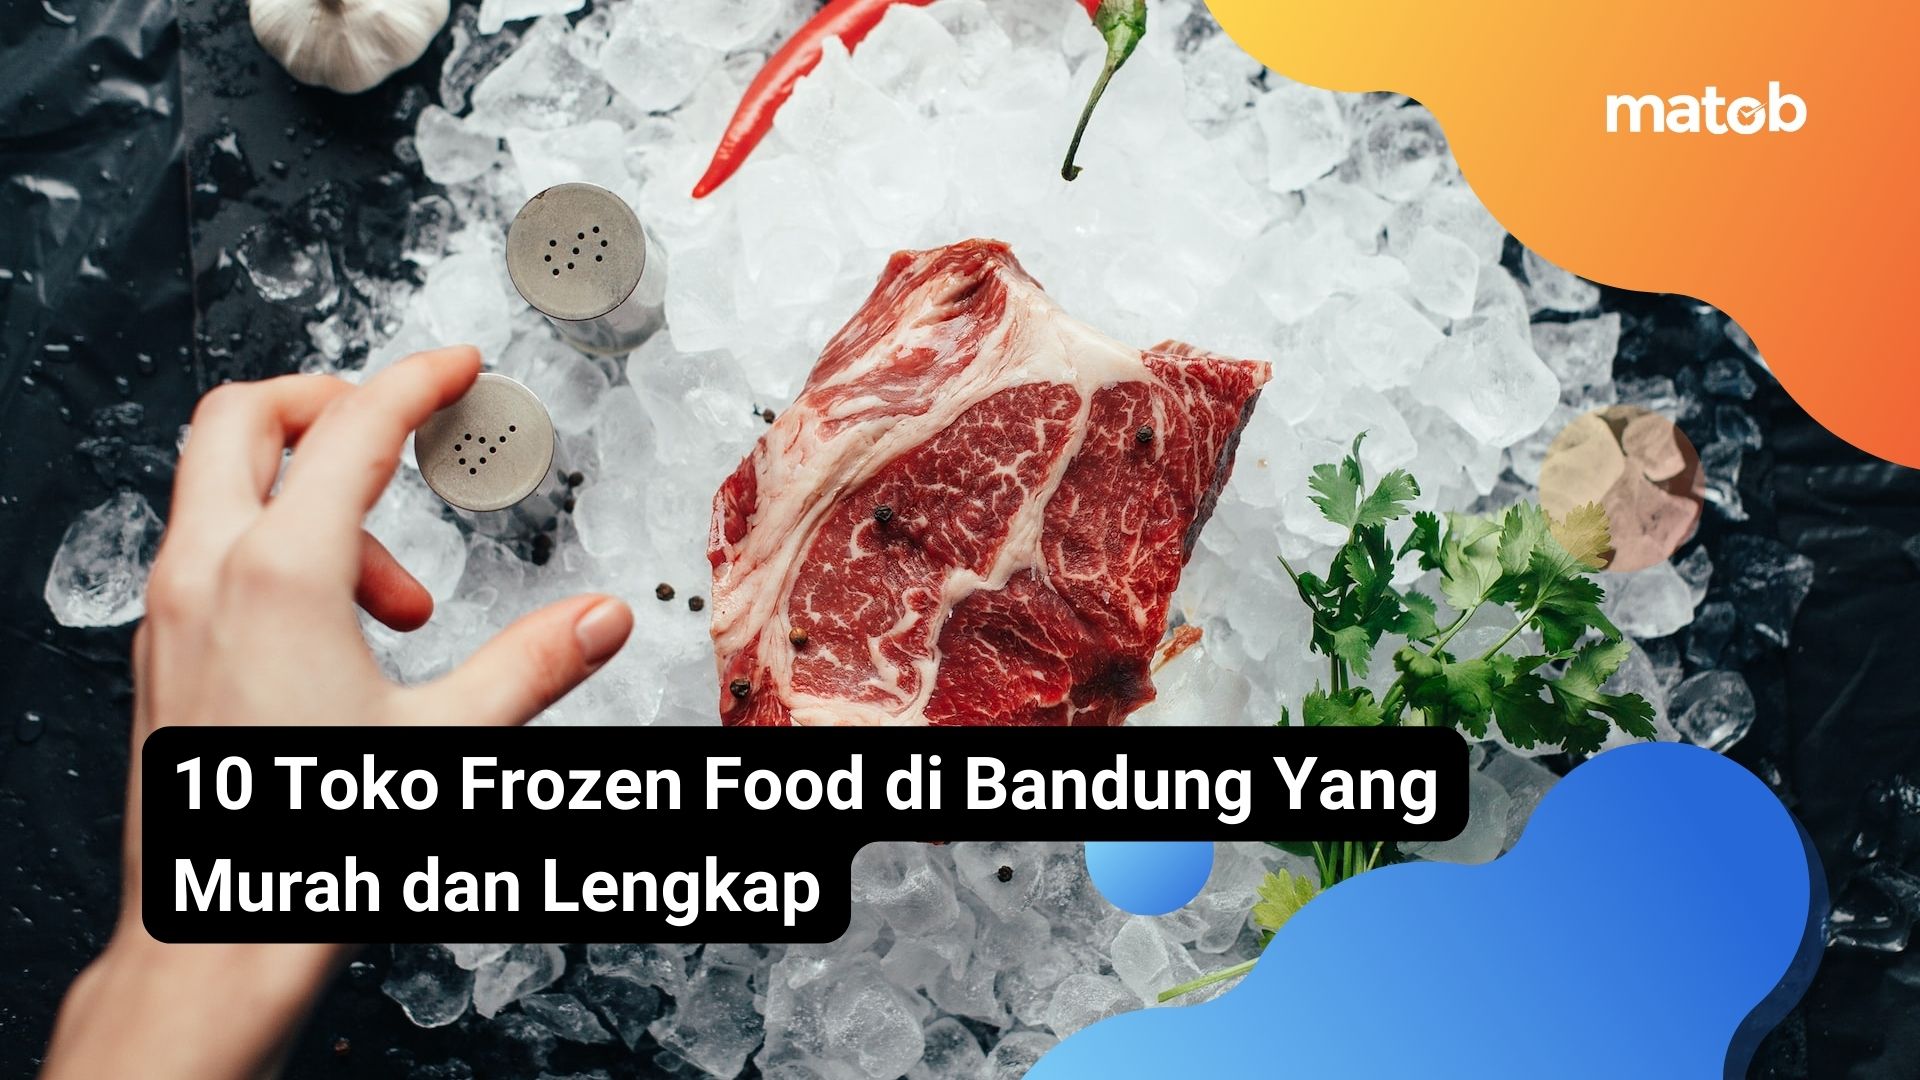 10 Toko Frozen Food di Bandung Yang Murah dan Lengkap